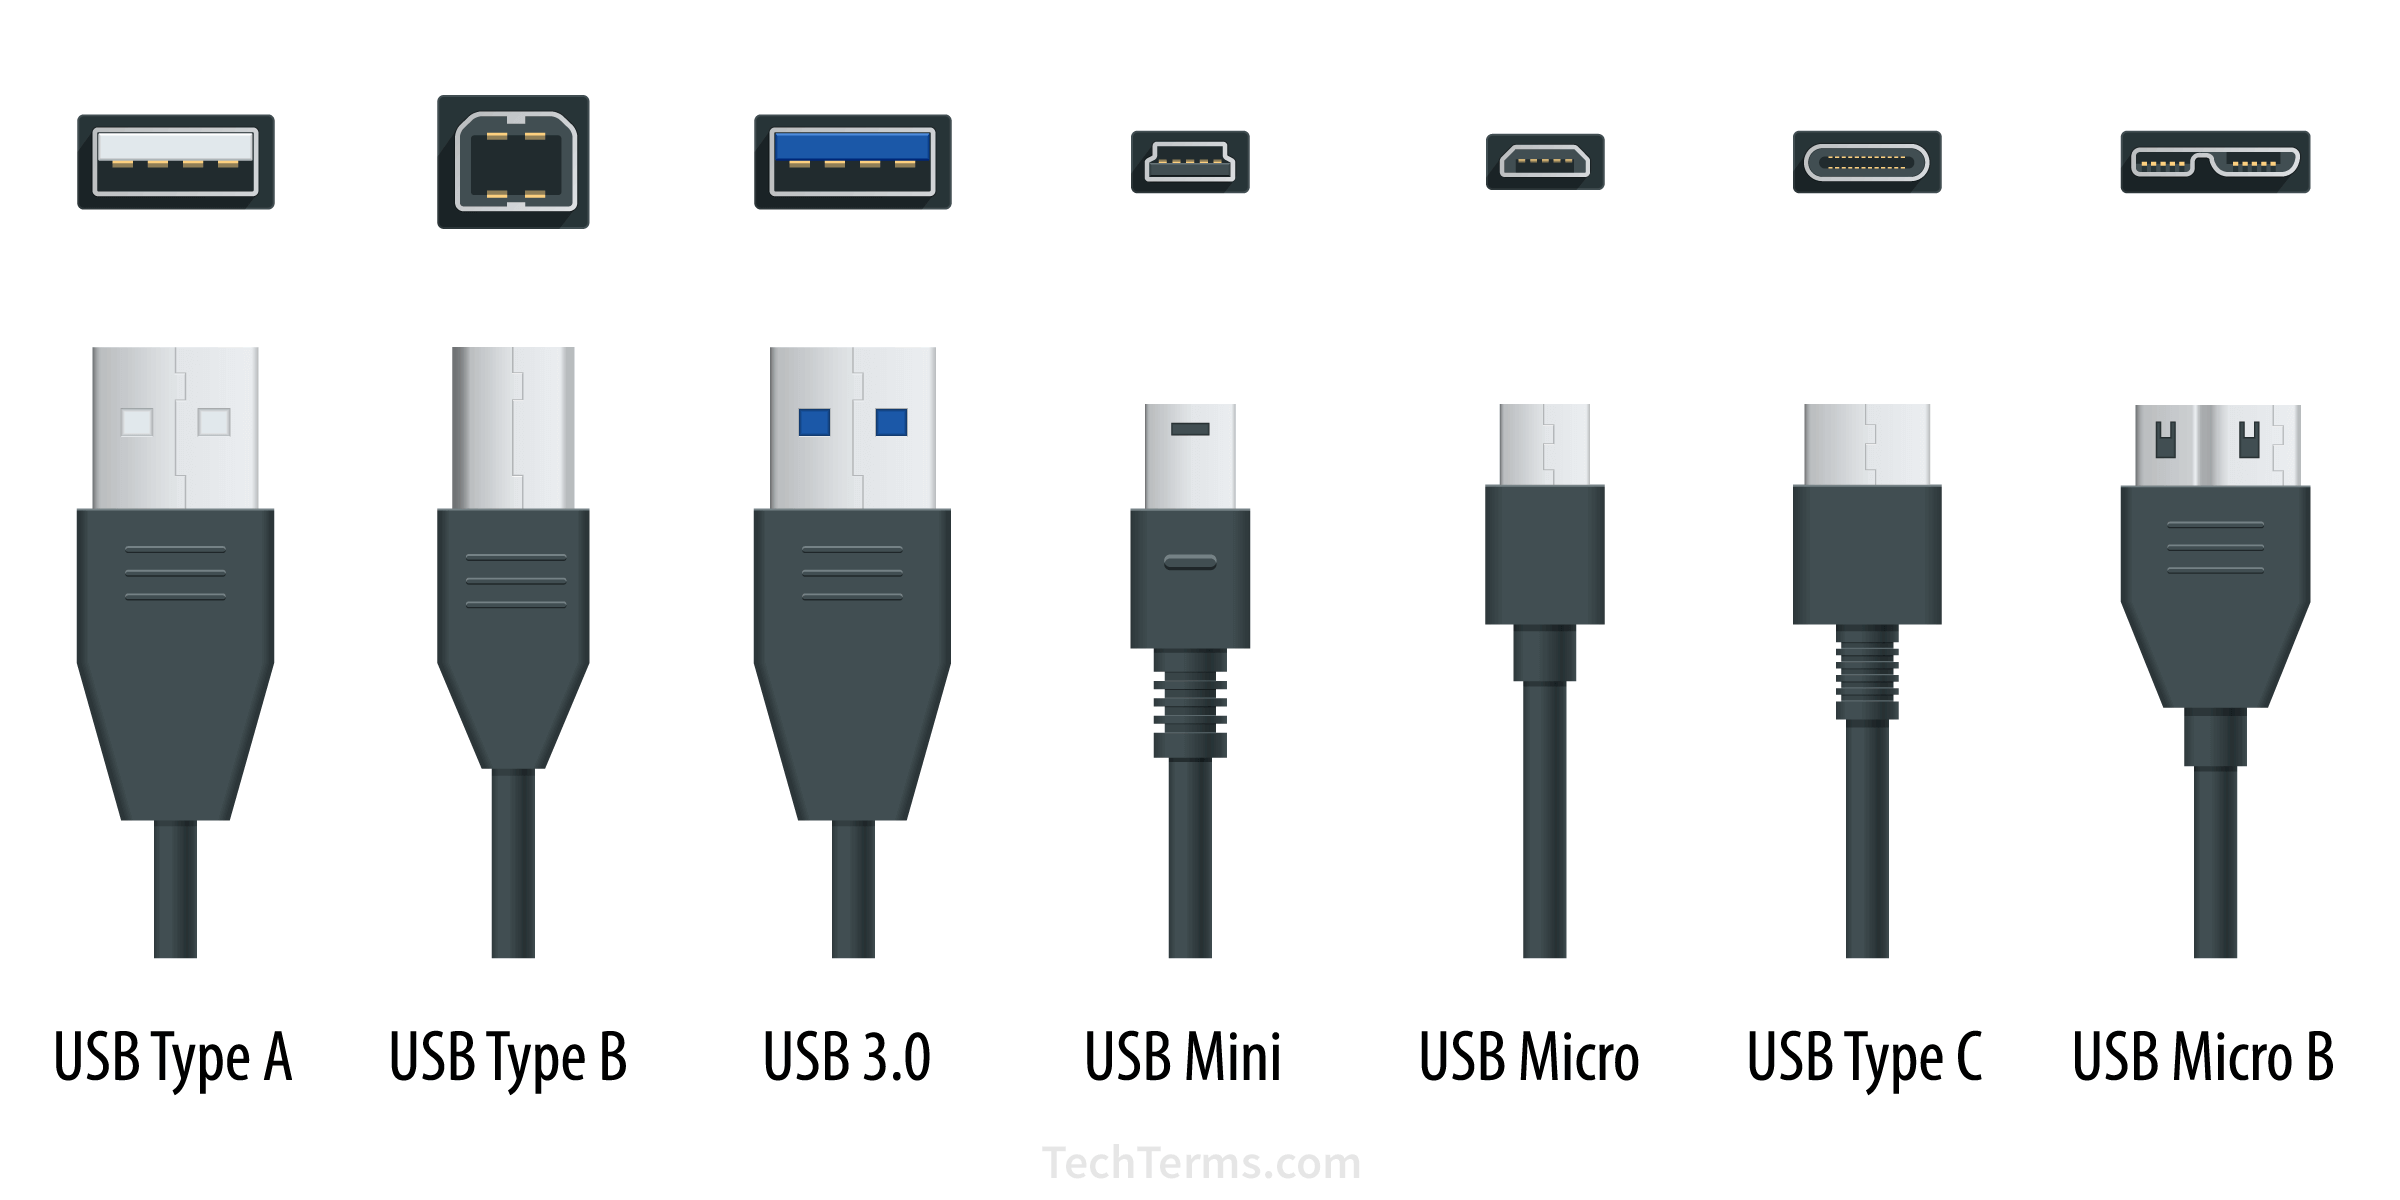 Selskab Legepladsudstyr hvid USB (Universal Serial Bus) Definition